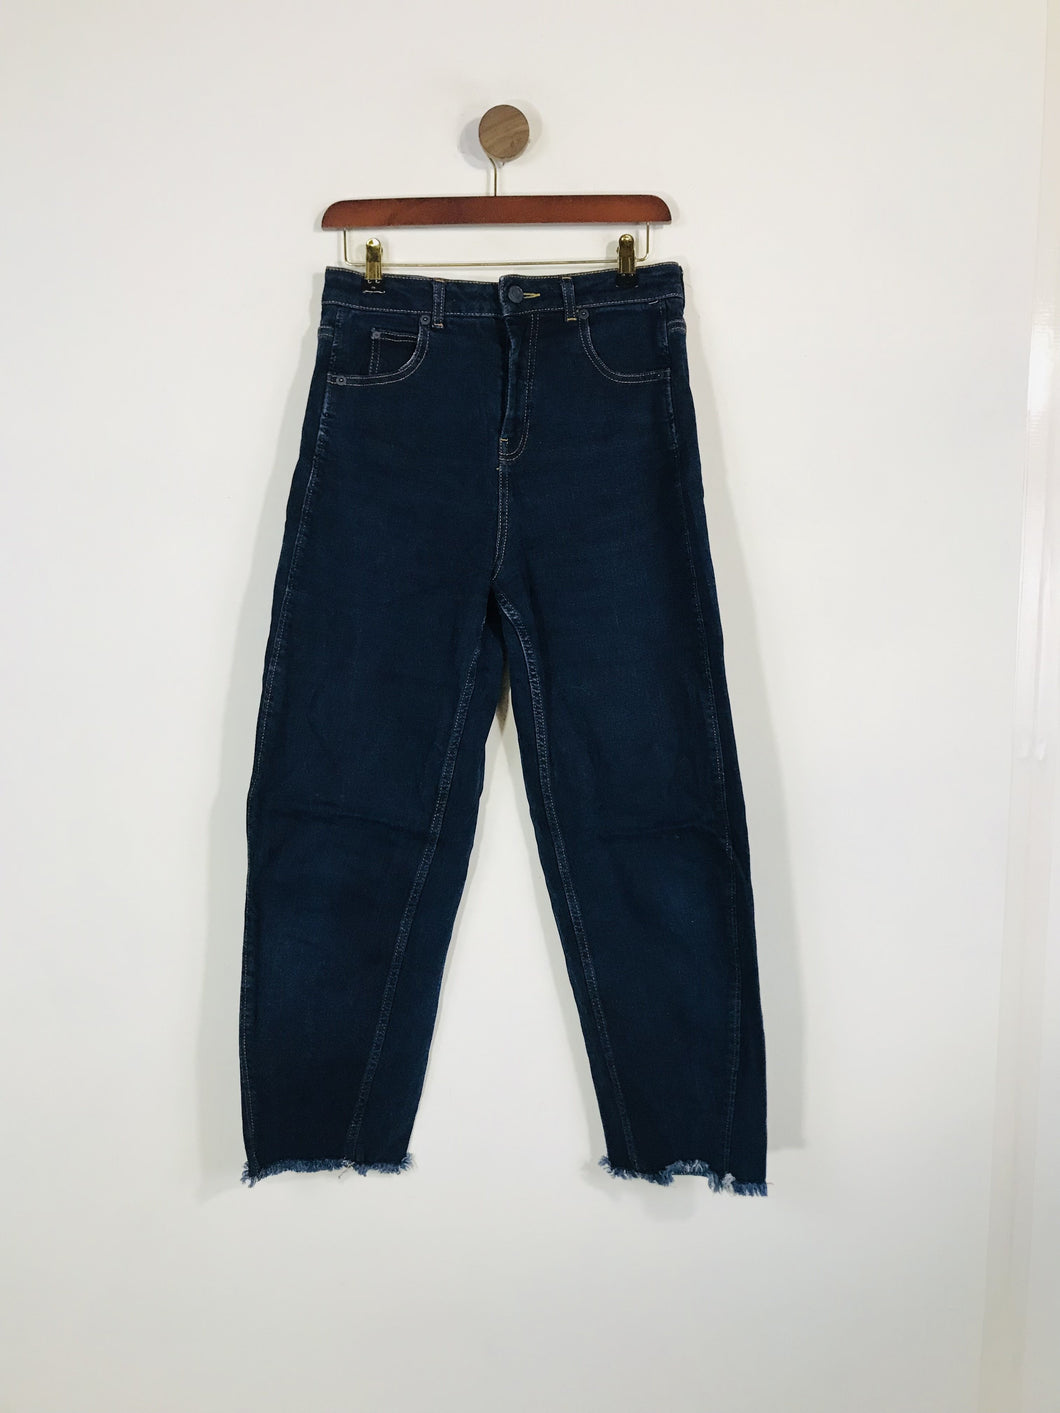 Whistles Women's Crop Boyfriend Jeans | W28 UK10 | Blue